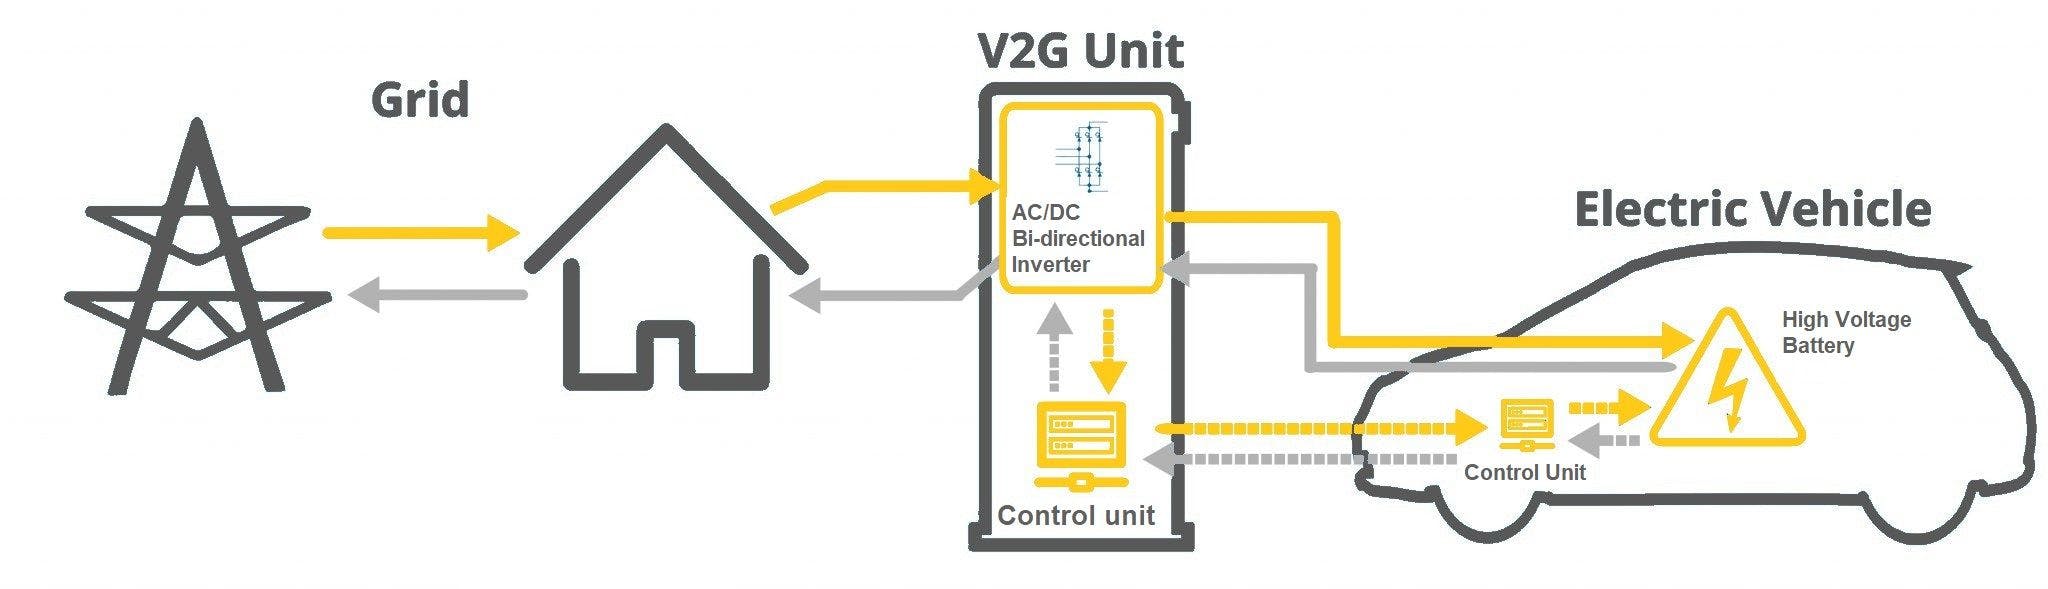 How bidirectional charging works V2G V2L V2H